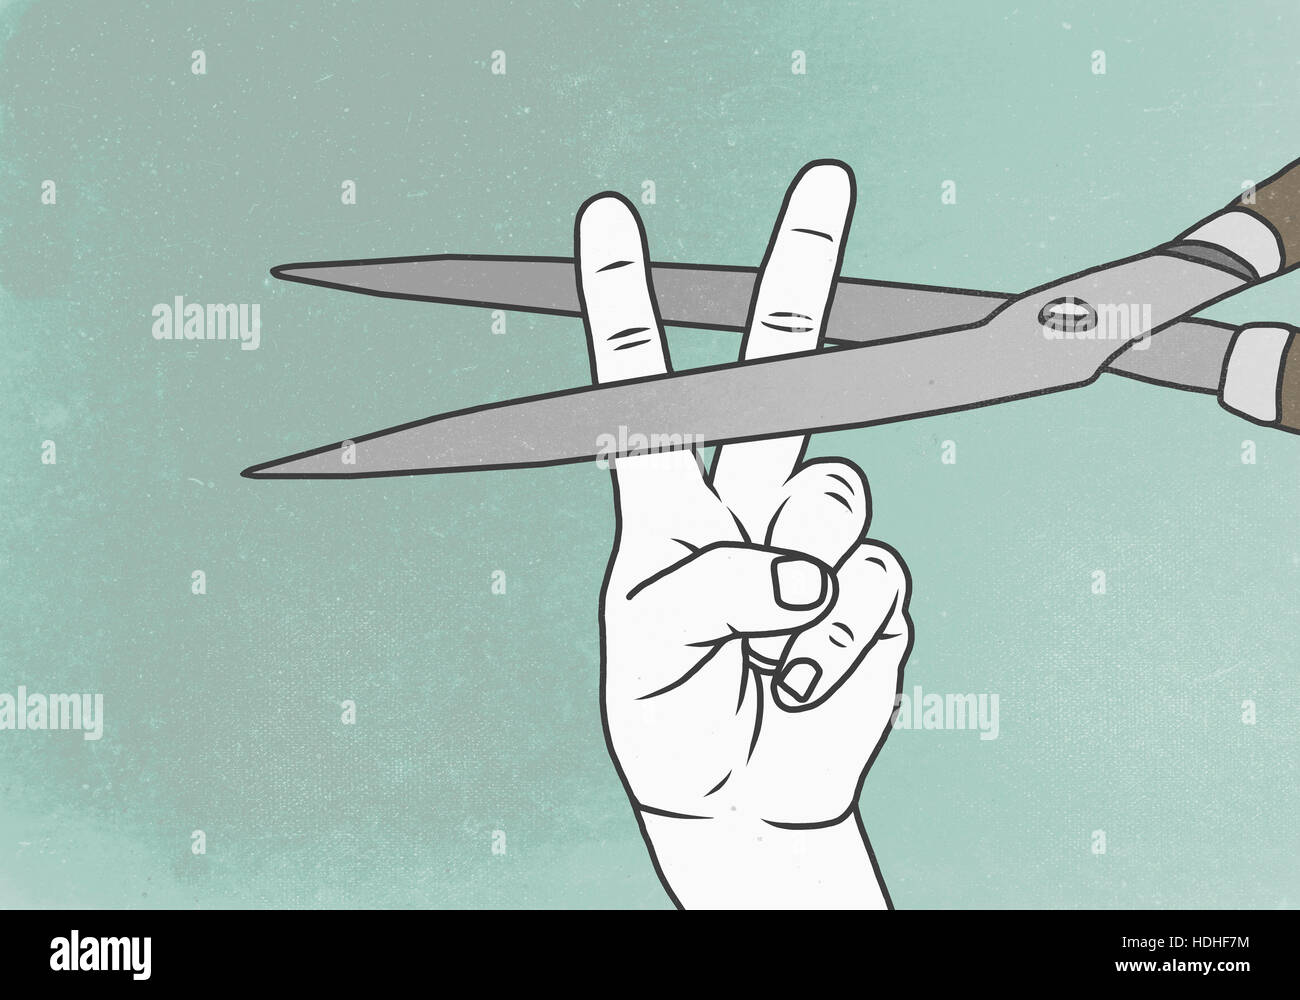 Illustration de la main montrant signe de la paix avec des ciseaux représentant la violence Banque D'Images